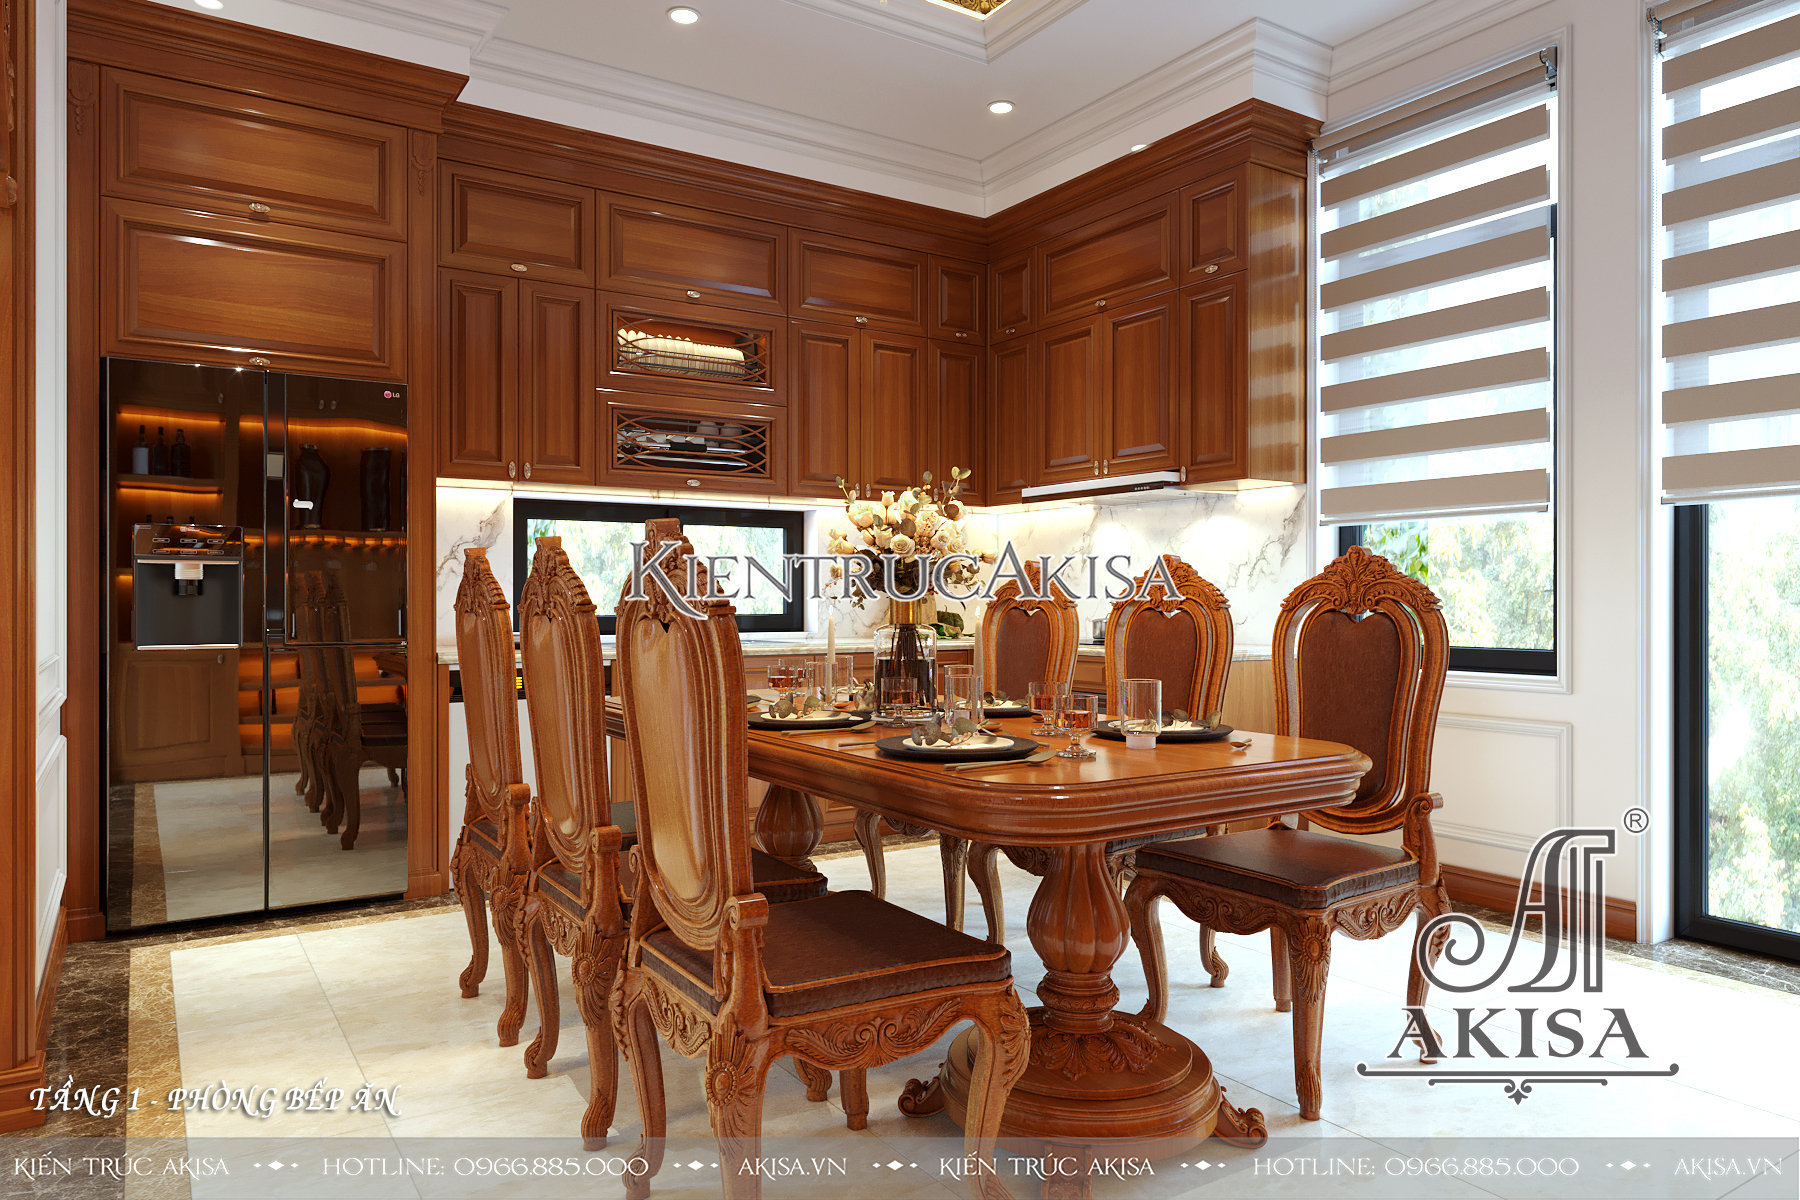 Mẫu nội thất nhà đẹp 2 tầng phong cách tân cổ điển kết hợp hiện đại - Phòng bếp ăn